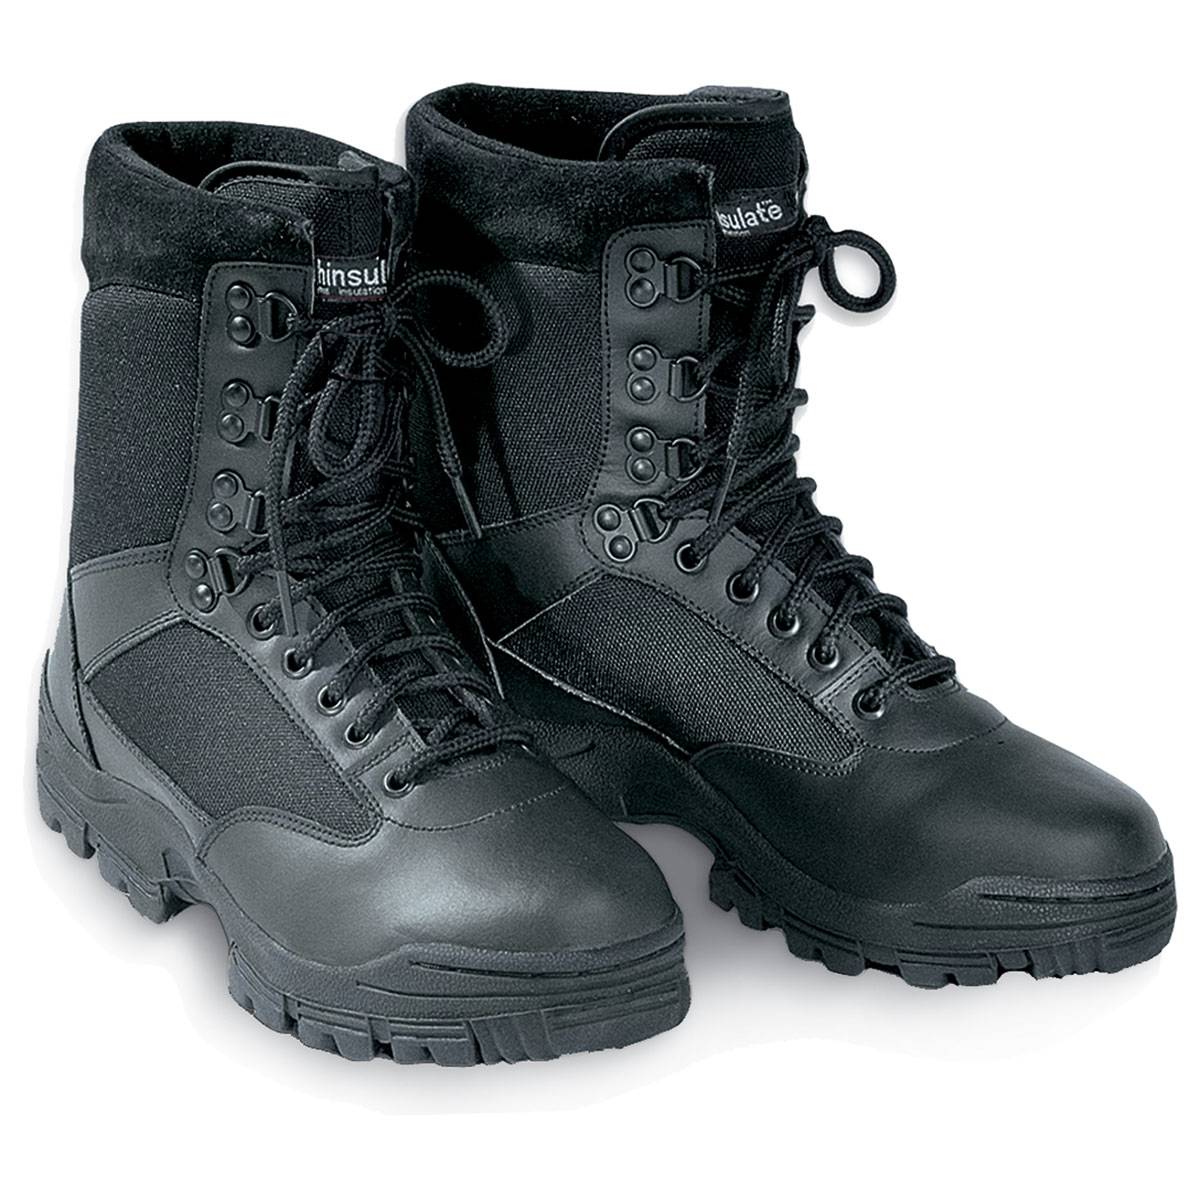 NEU US Tactical MA1 Boots schwarz Einsatzstiefel Echtleder Armee Springerstiefel 